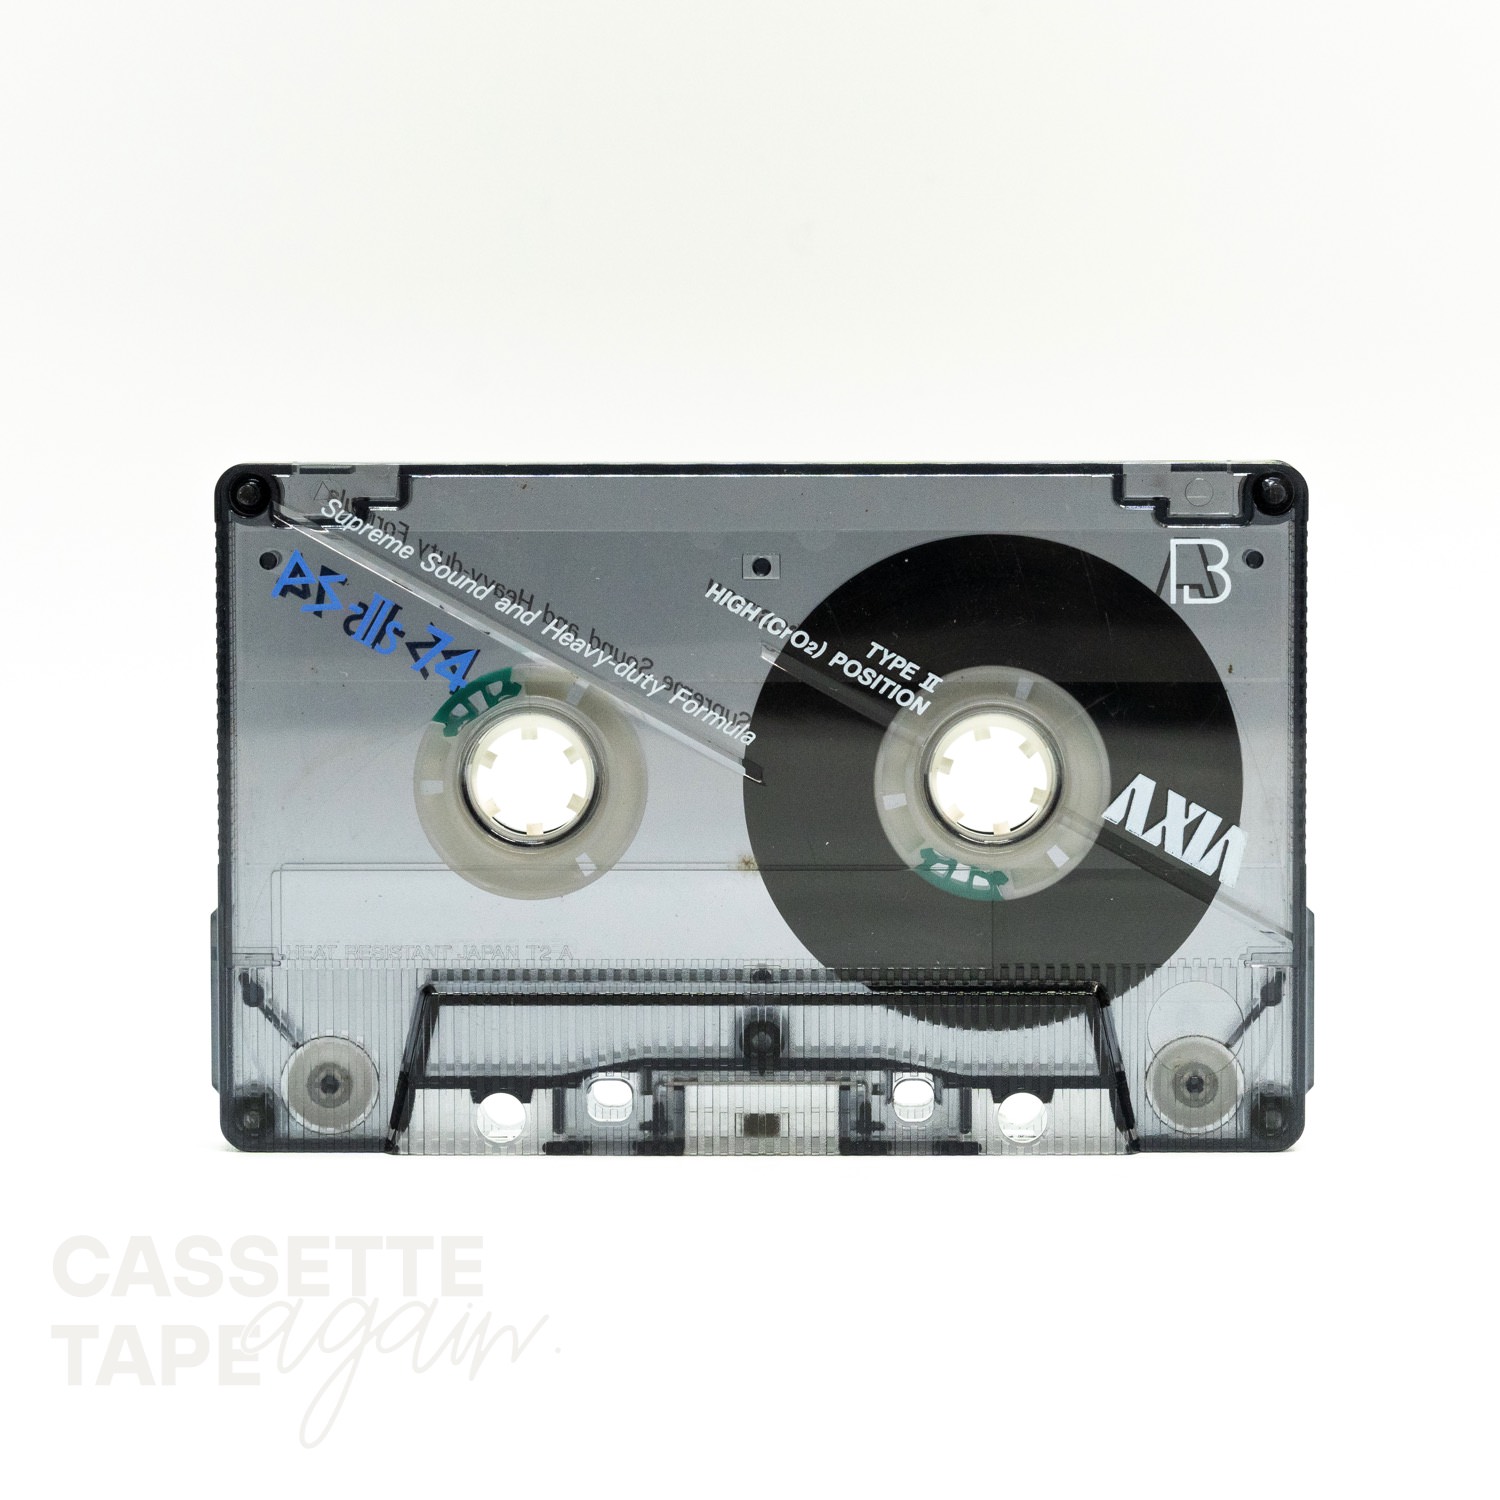 お待たせ! AXIA カセットテープ PS-Ⅳx46.60 PS-Ⅱs 90 メタルテープ